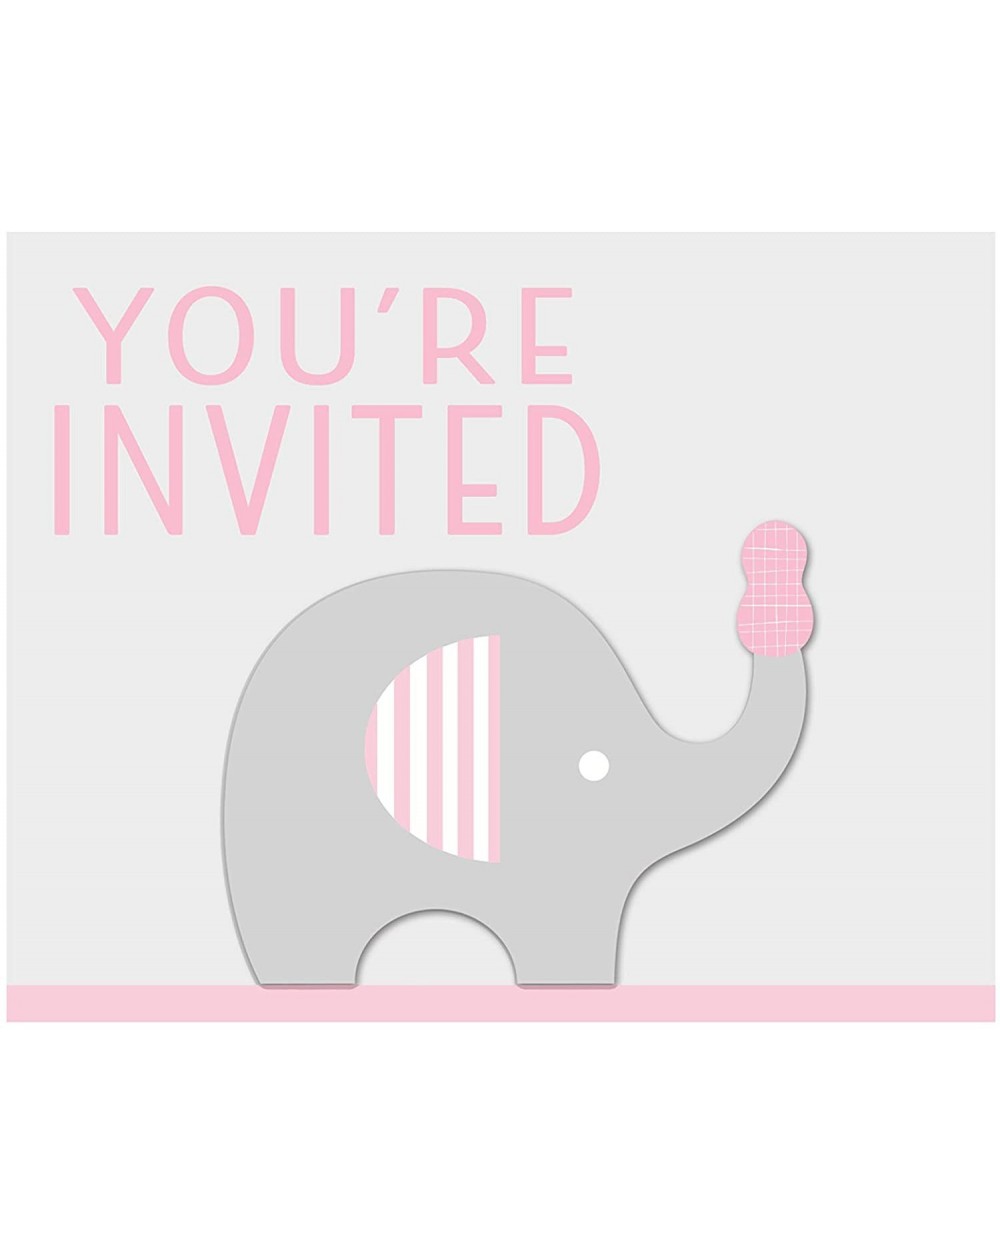 Invitations Little Peanut Girl Elephant Invitations- 24 ct - CJ18XGX7ZR0 $26.87